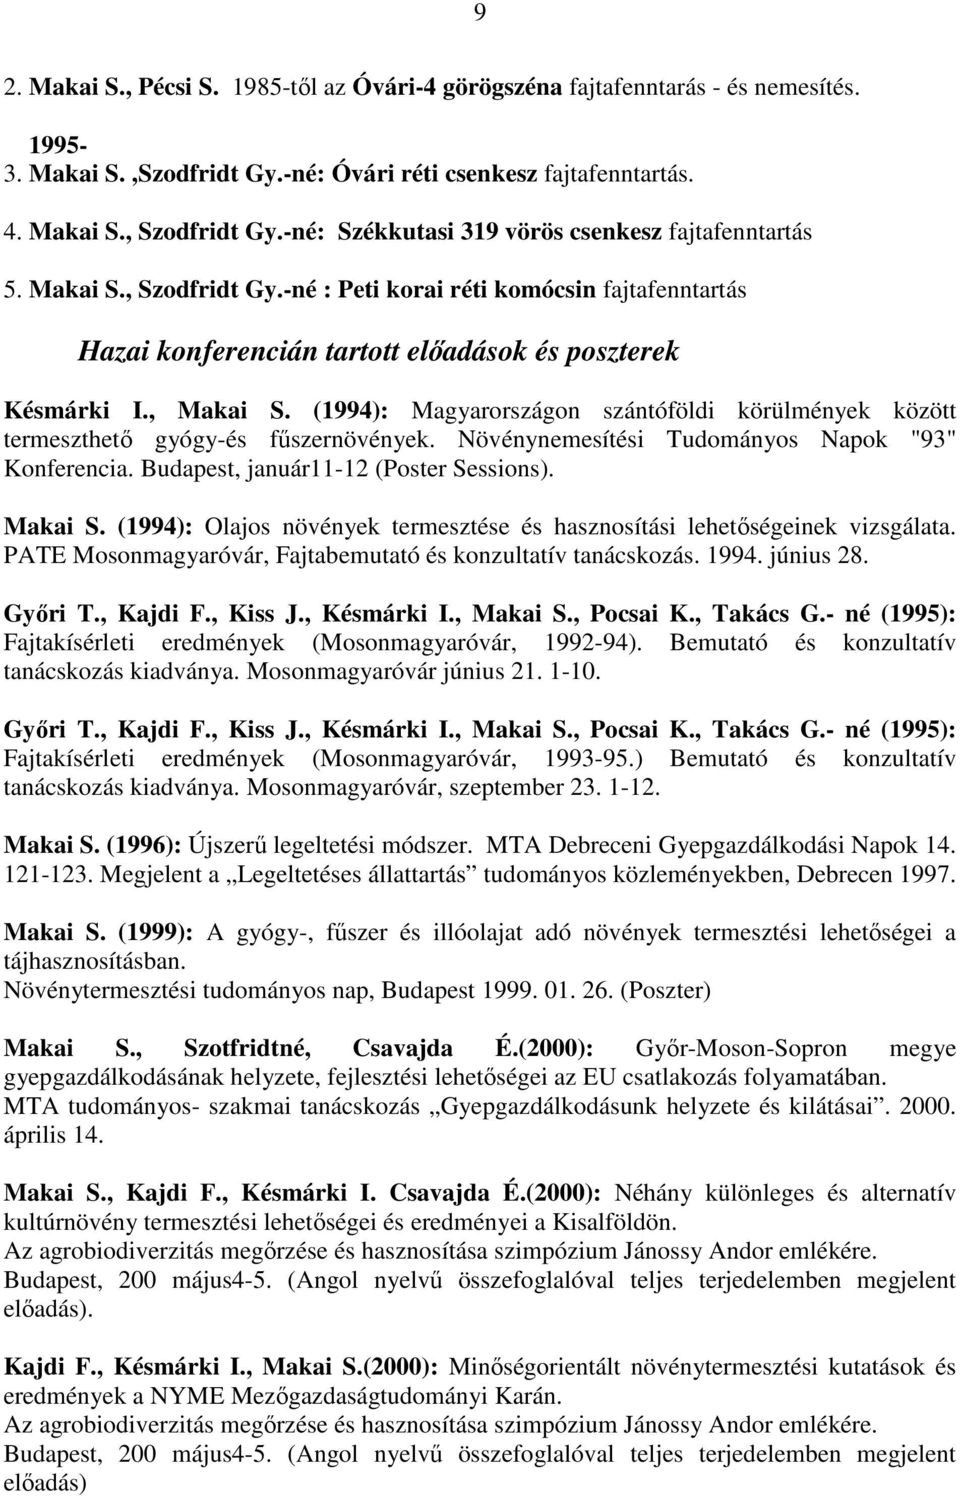 (1994): Magyarországon szántóföldi körülmények között termeszthetı gyógy-és főszernövények. Növénynemesítési Tudományos Napok "93" Konferencia. Budapest, január11-12 (Poster Sessions). Makai S.